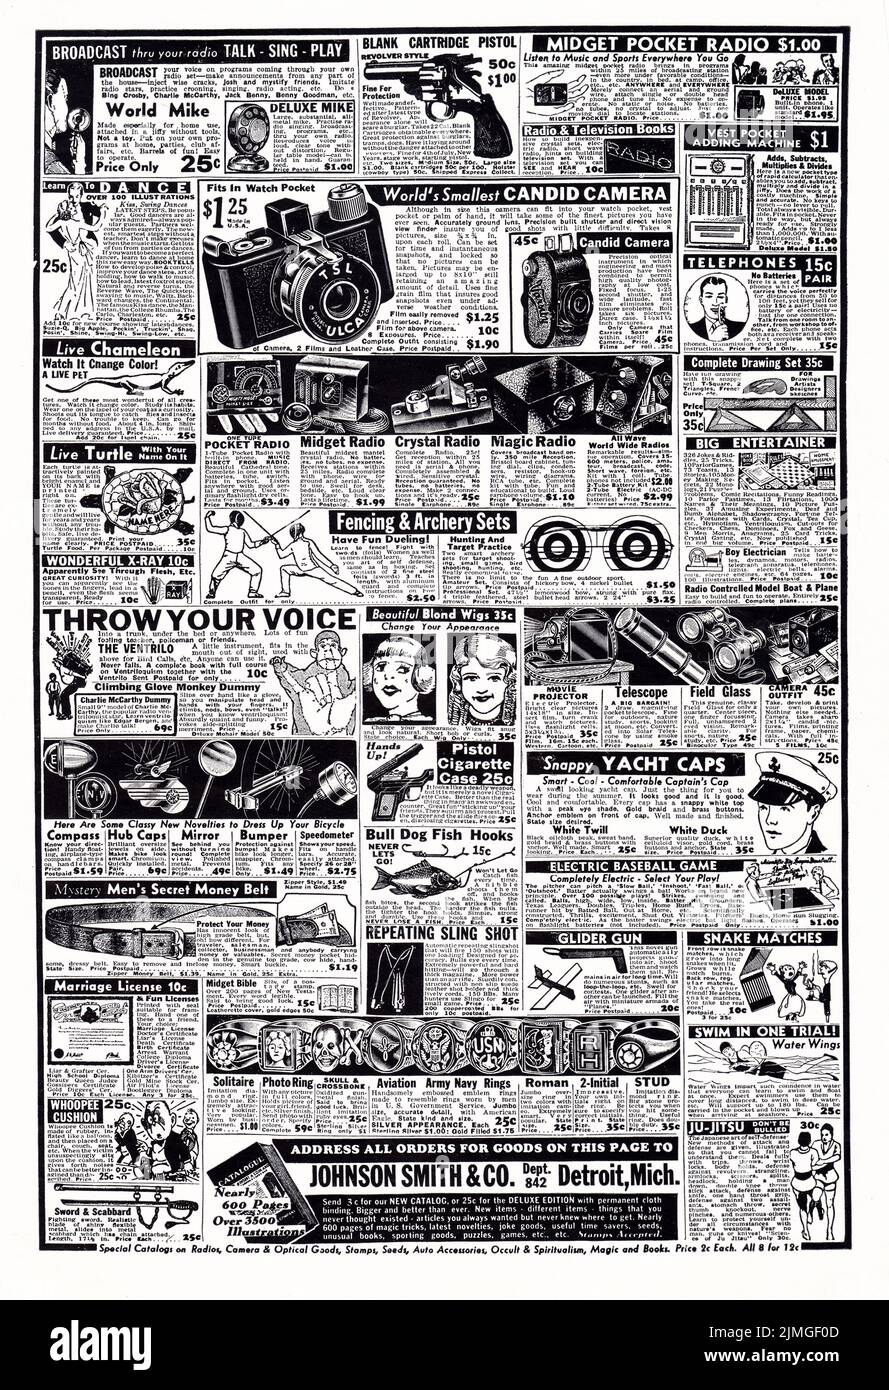 TCHOTCHKES. Eine ganzseitige Anzeige von einem Musikmagazin aus dem Jahr 1938, das über 60 verschiedene Gadgets, Tchotchkes und Must Haves wirbt. Stockfoto